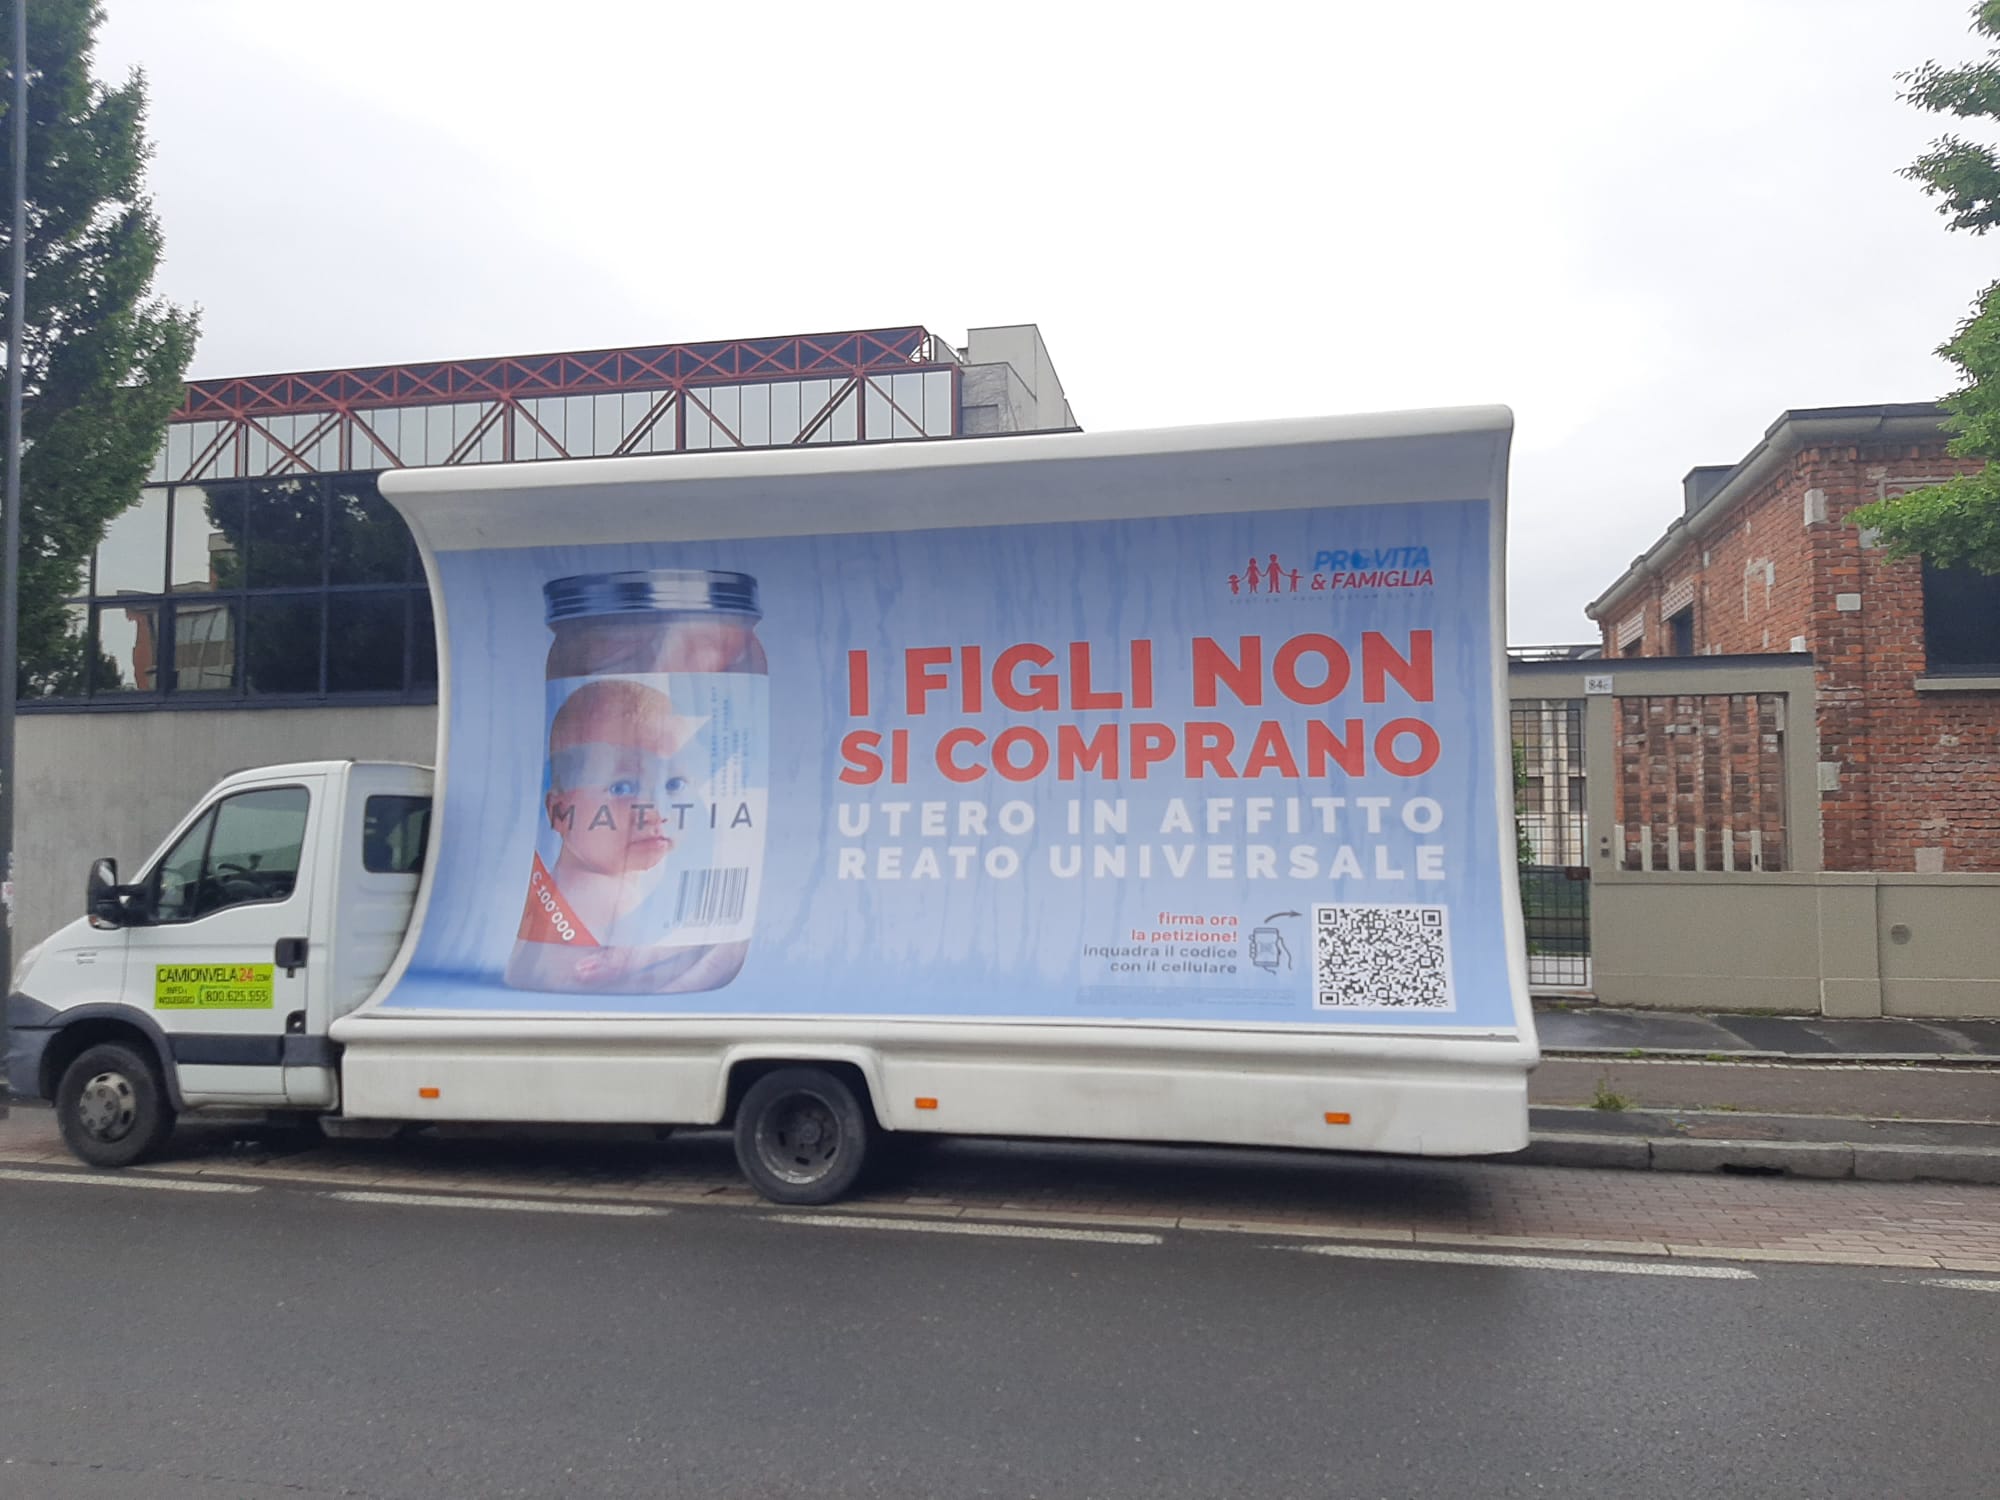 Utero in Affitto. Camion Vela di Pro Vita & Famiglia davanti alla Fiera Wish for a Baby. Figli non si comprano! 1